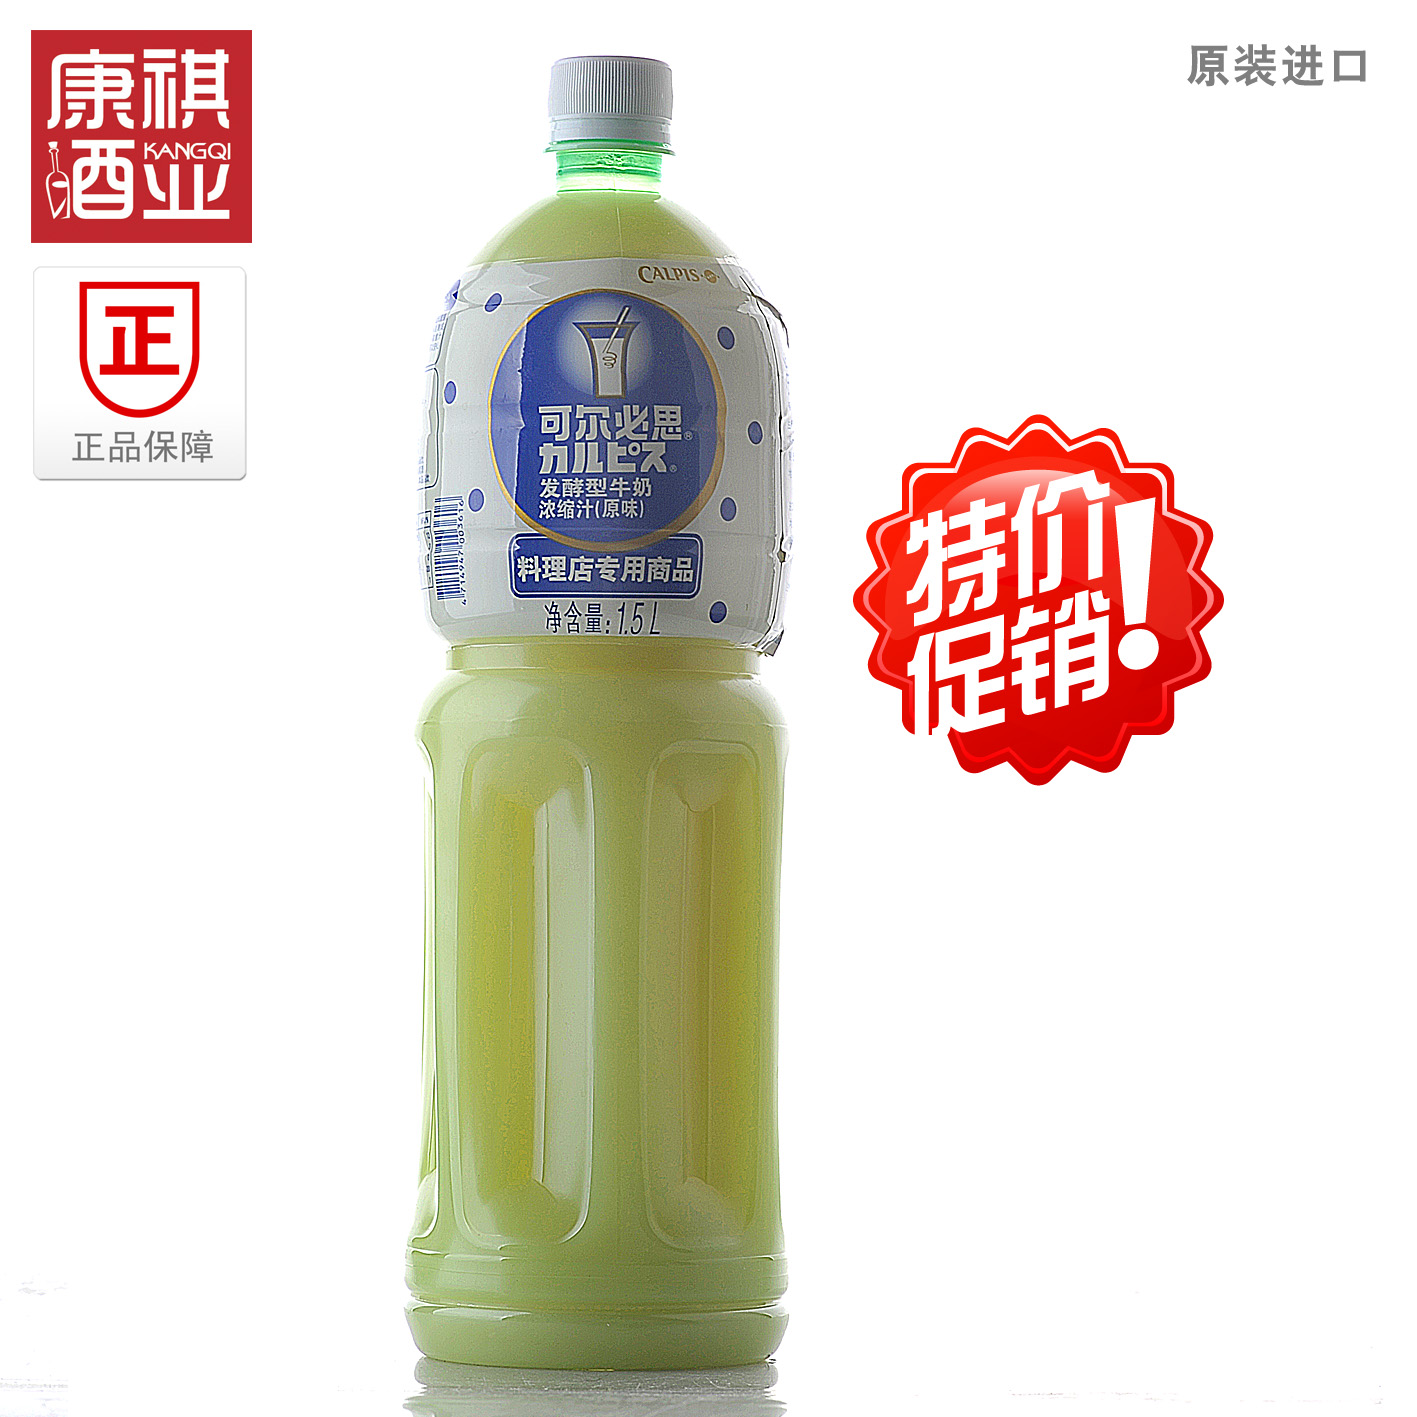 原装进口台湾饮料可尔必思发酵型牛奶浓缩汁原味1.5L三得利苏打水折扣优惠信息